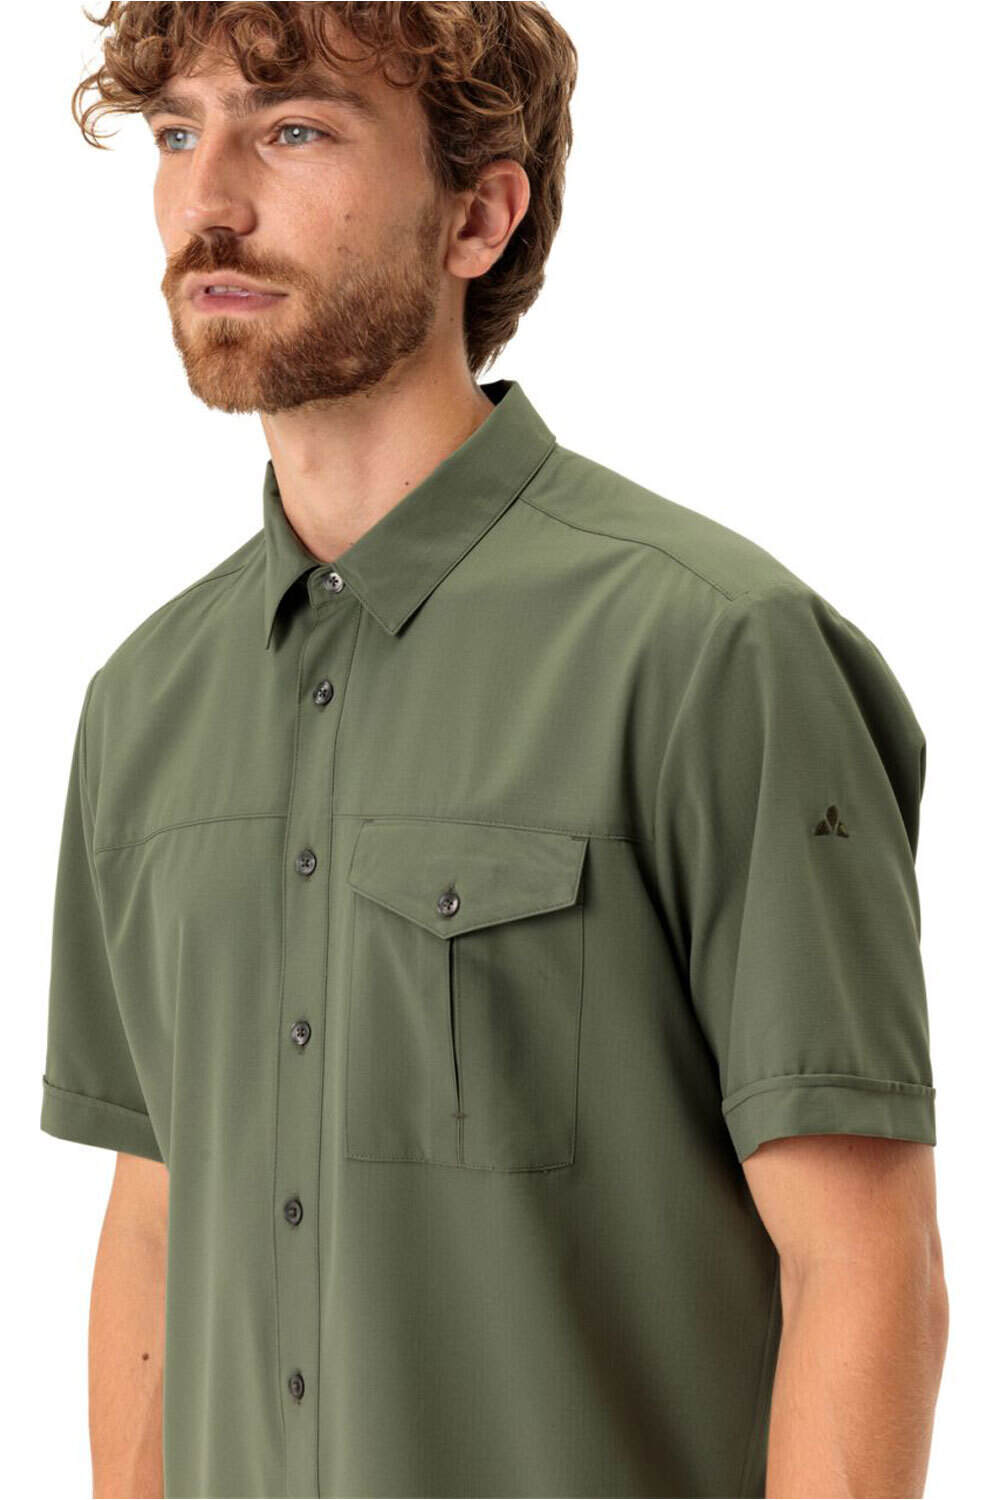 Vaude camisa montaña manga corta hombre Men's Rosemoor Shirt II 03